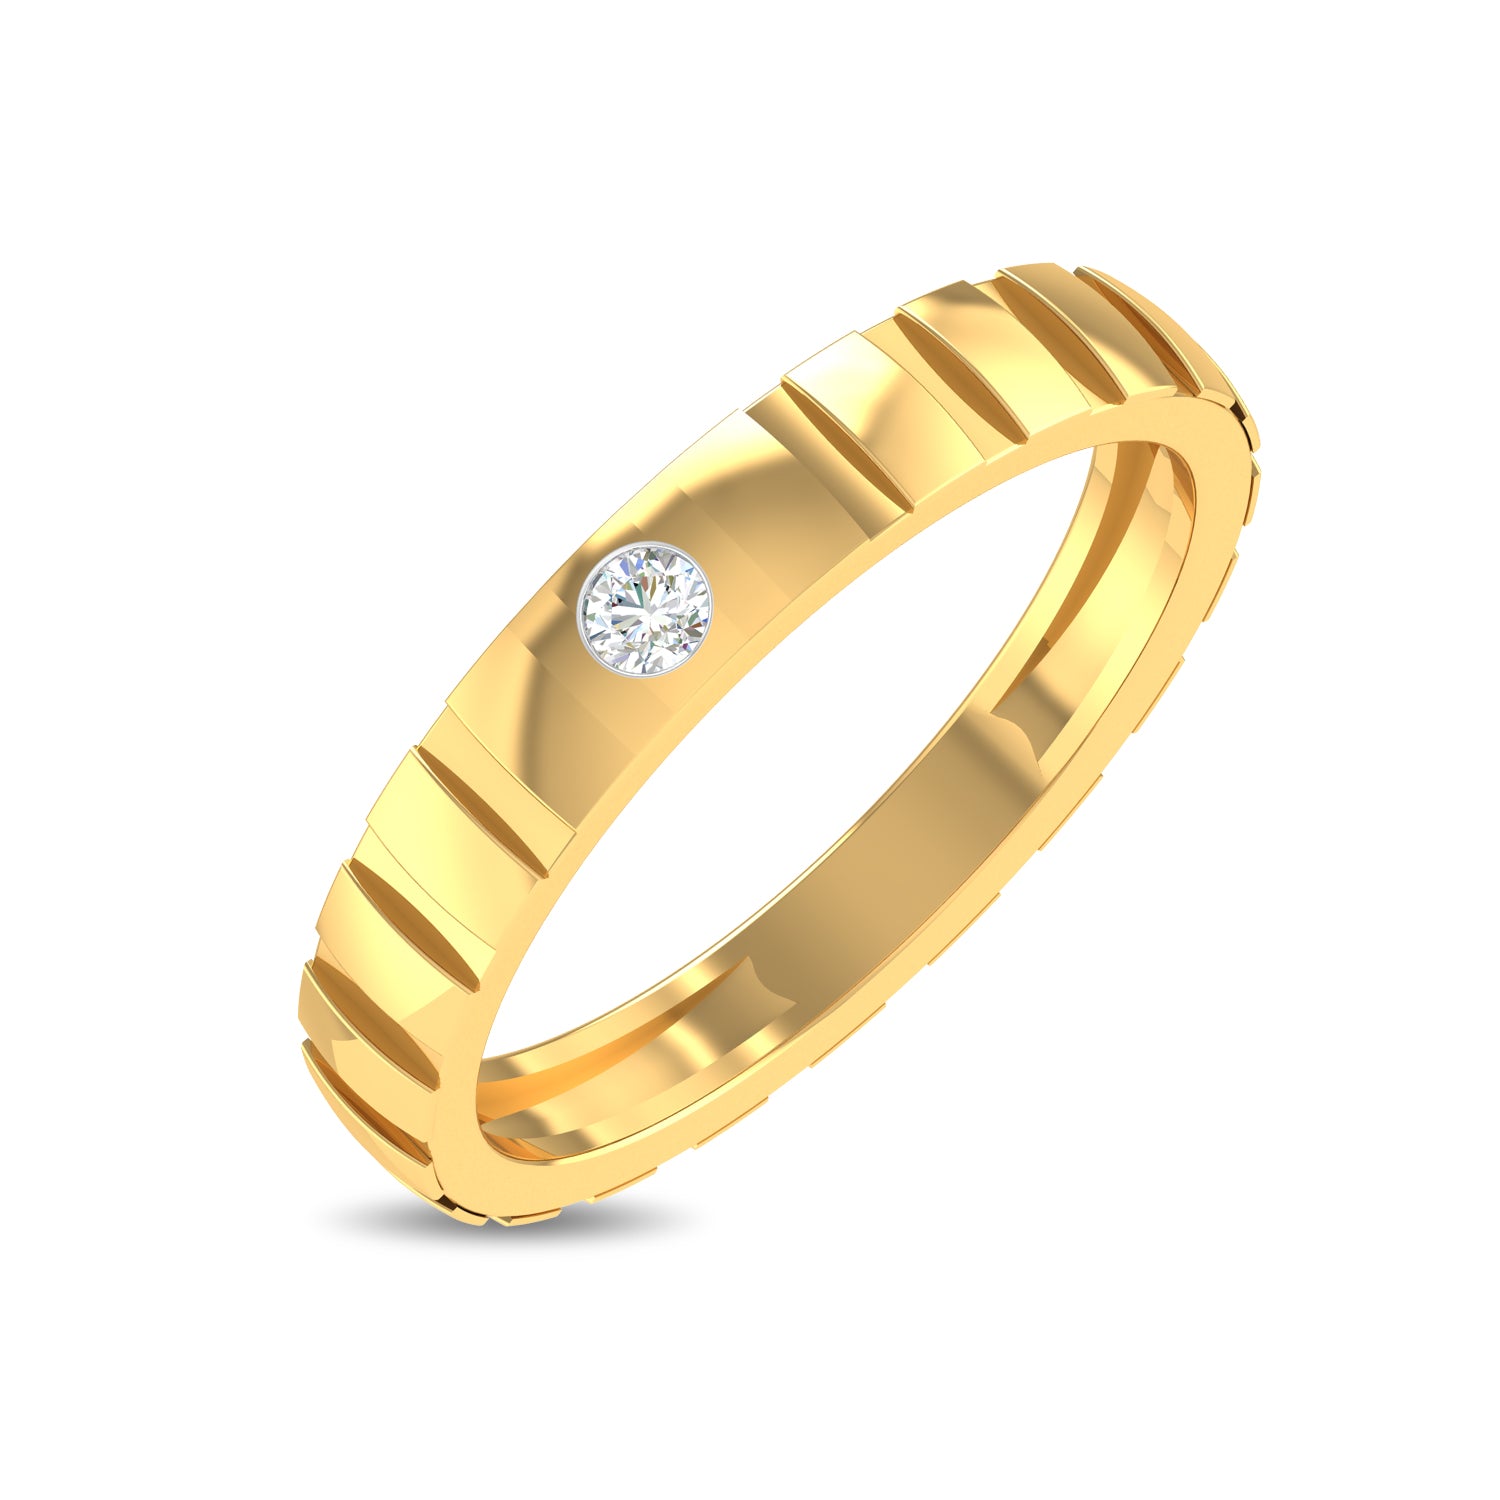 Buy 22KT Gold Ring for Men | New Mens Gold Rings Design - PC Chandra